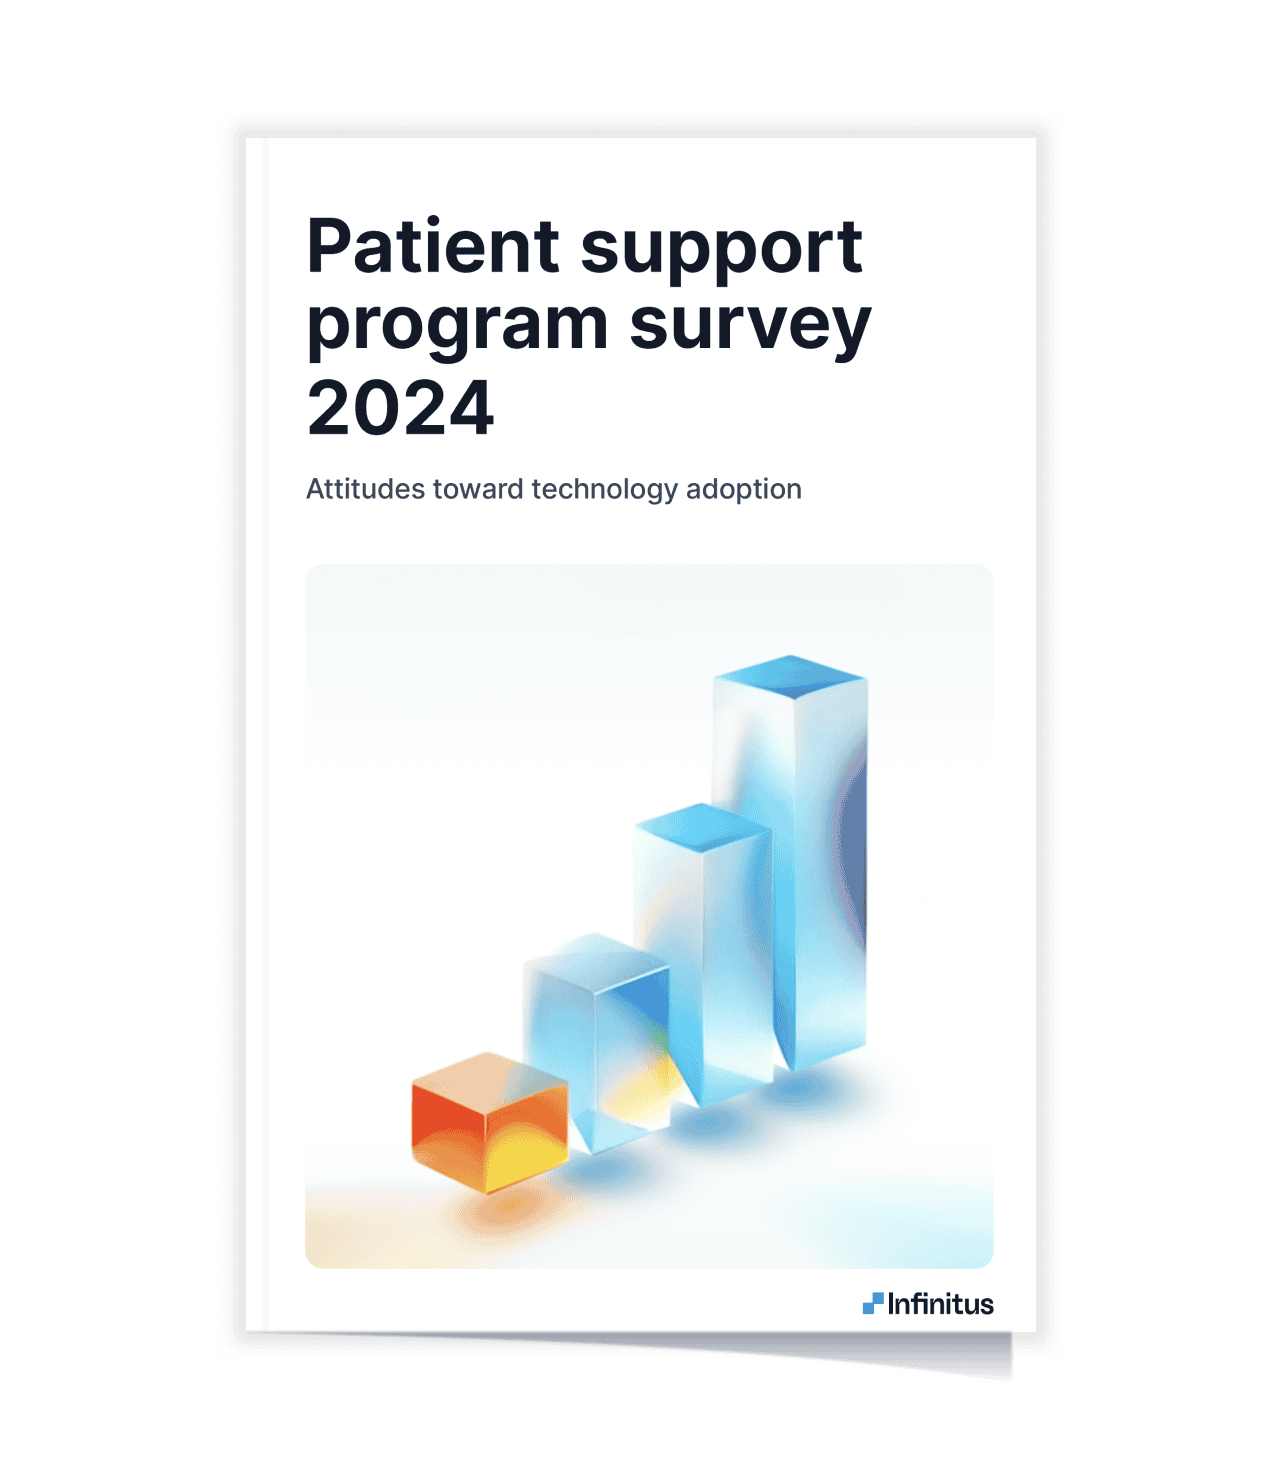 Patient support program survey 2024 report cover